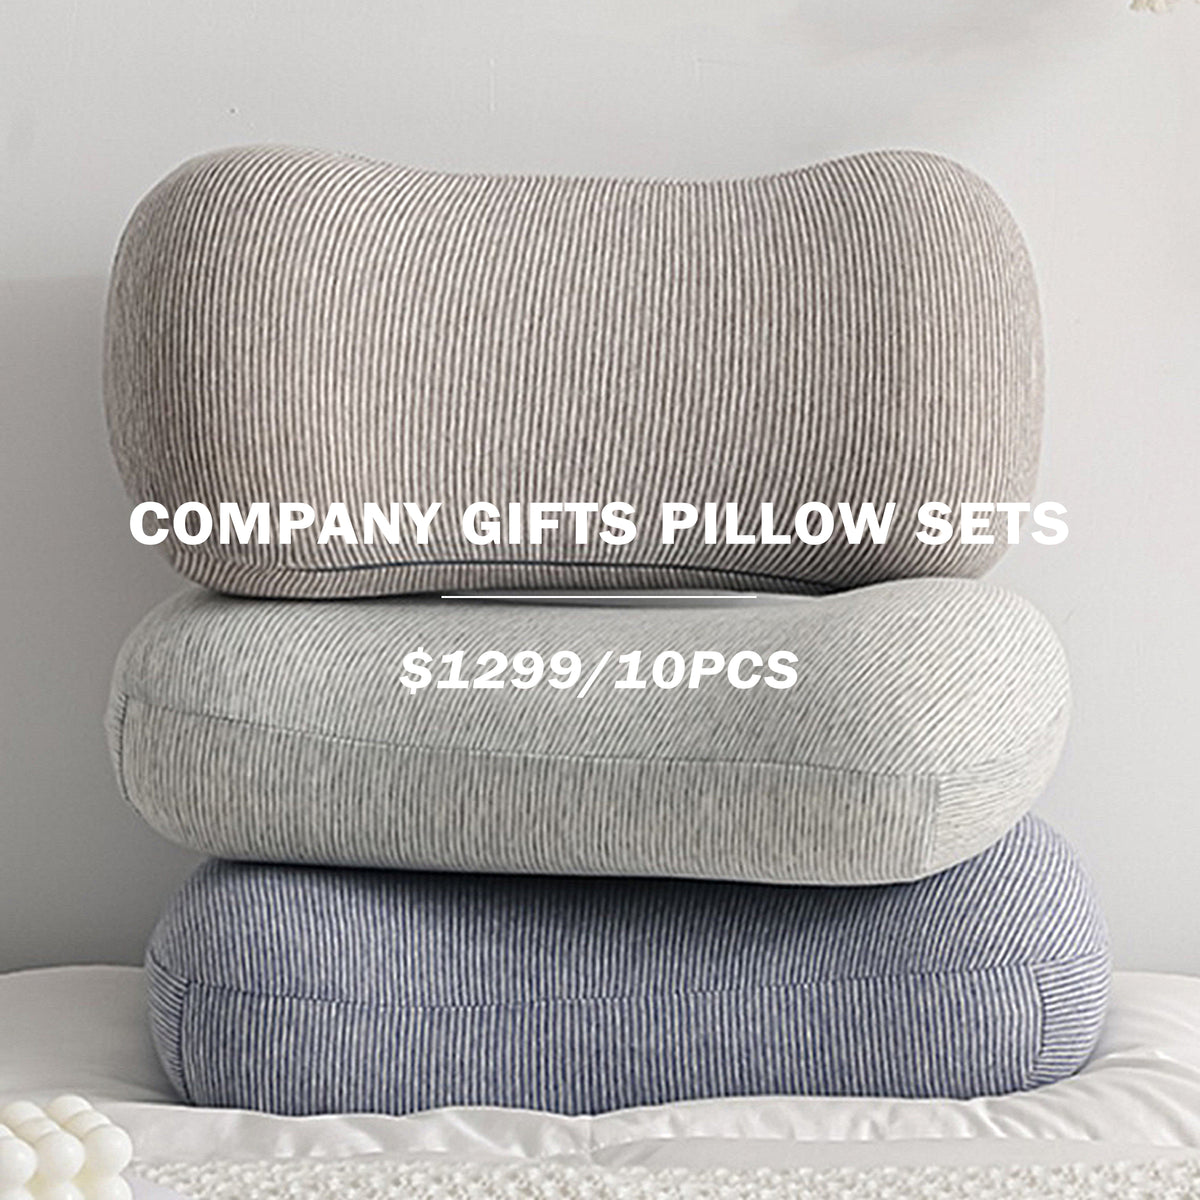 【Company Gifts】 Lumbar Support Pillow & Nap Pillow Customization Lumbar Support Pillow & Nap Pillow Printing Logo X 10 PCS